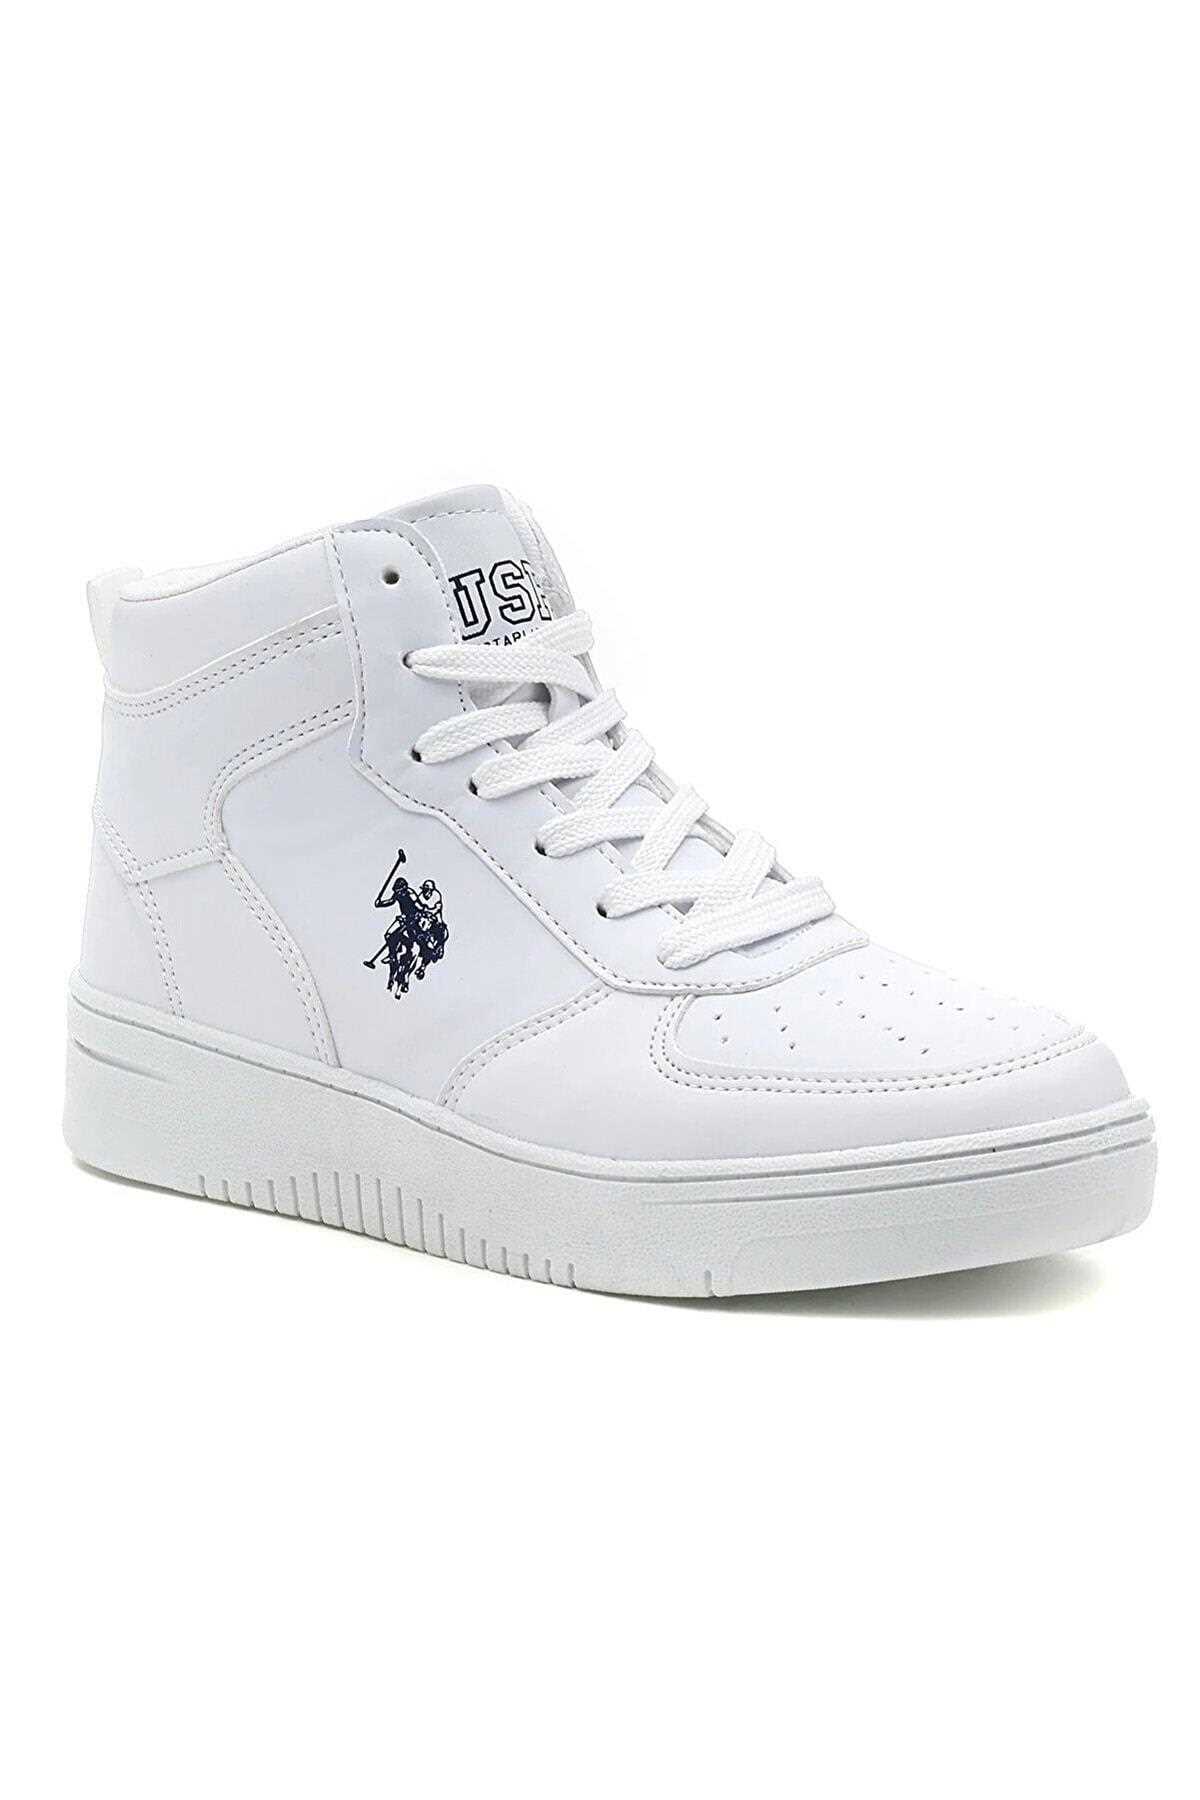 کفش مخصوص پیاده روی برند US Polo Assn رنگ سفید ty351902187